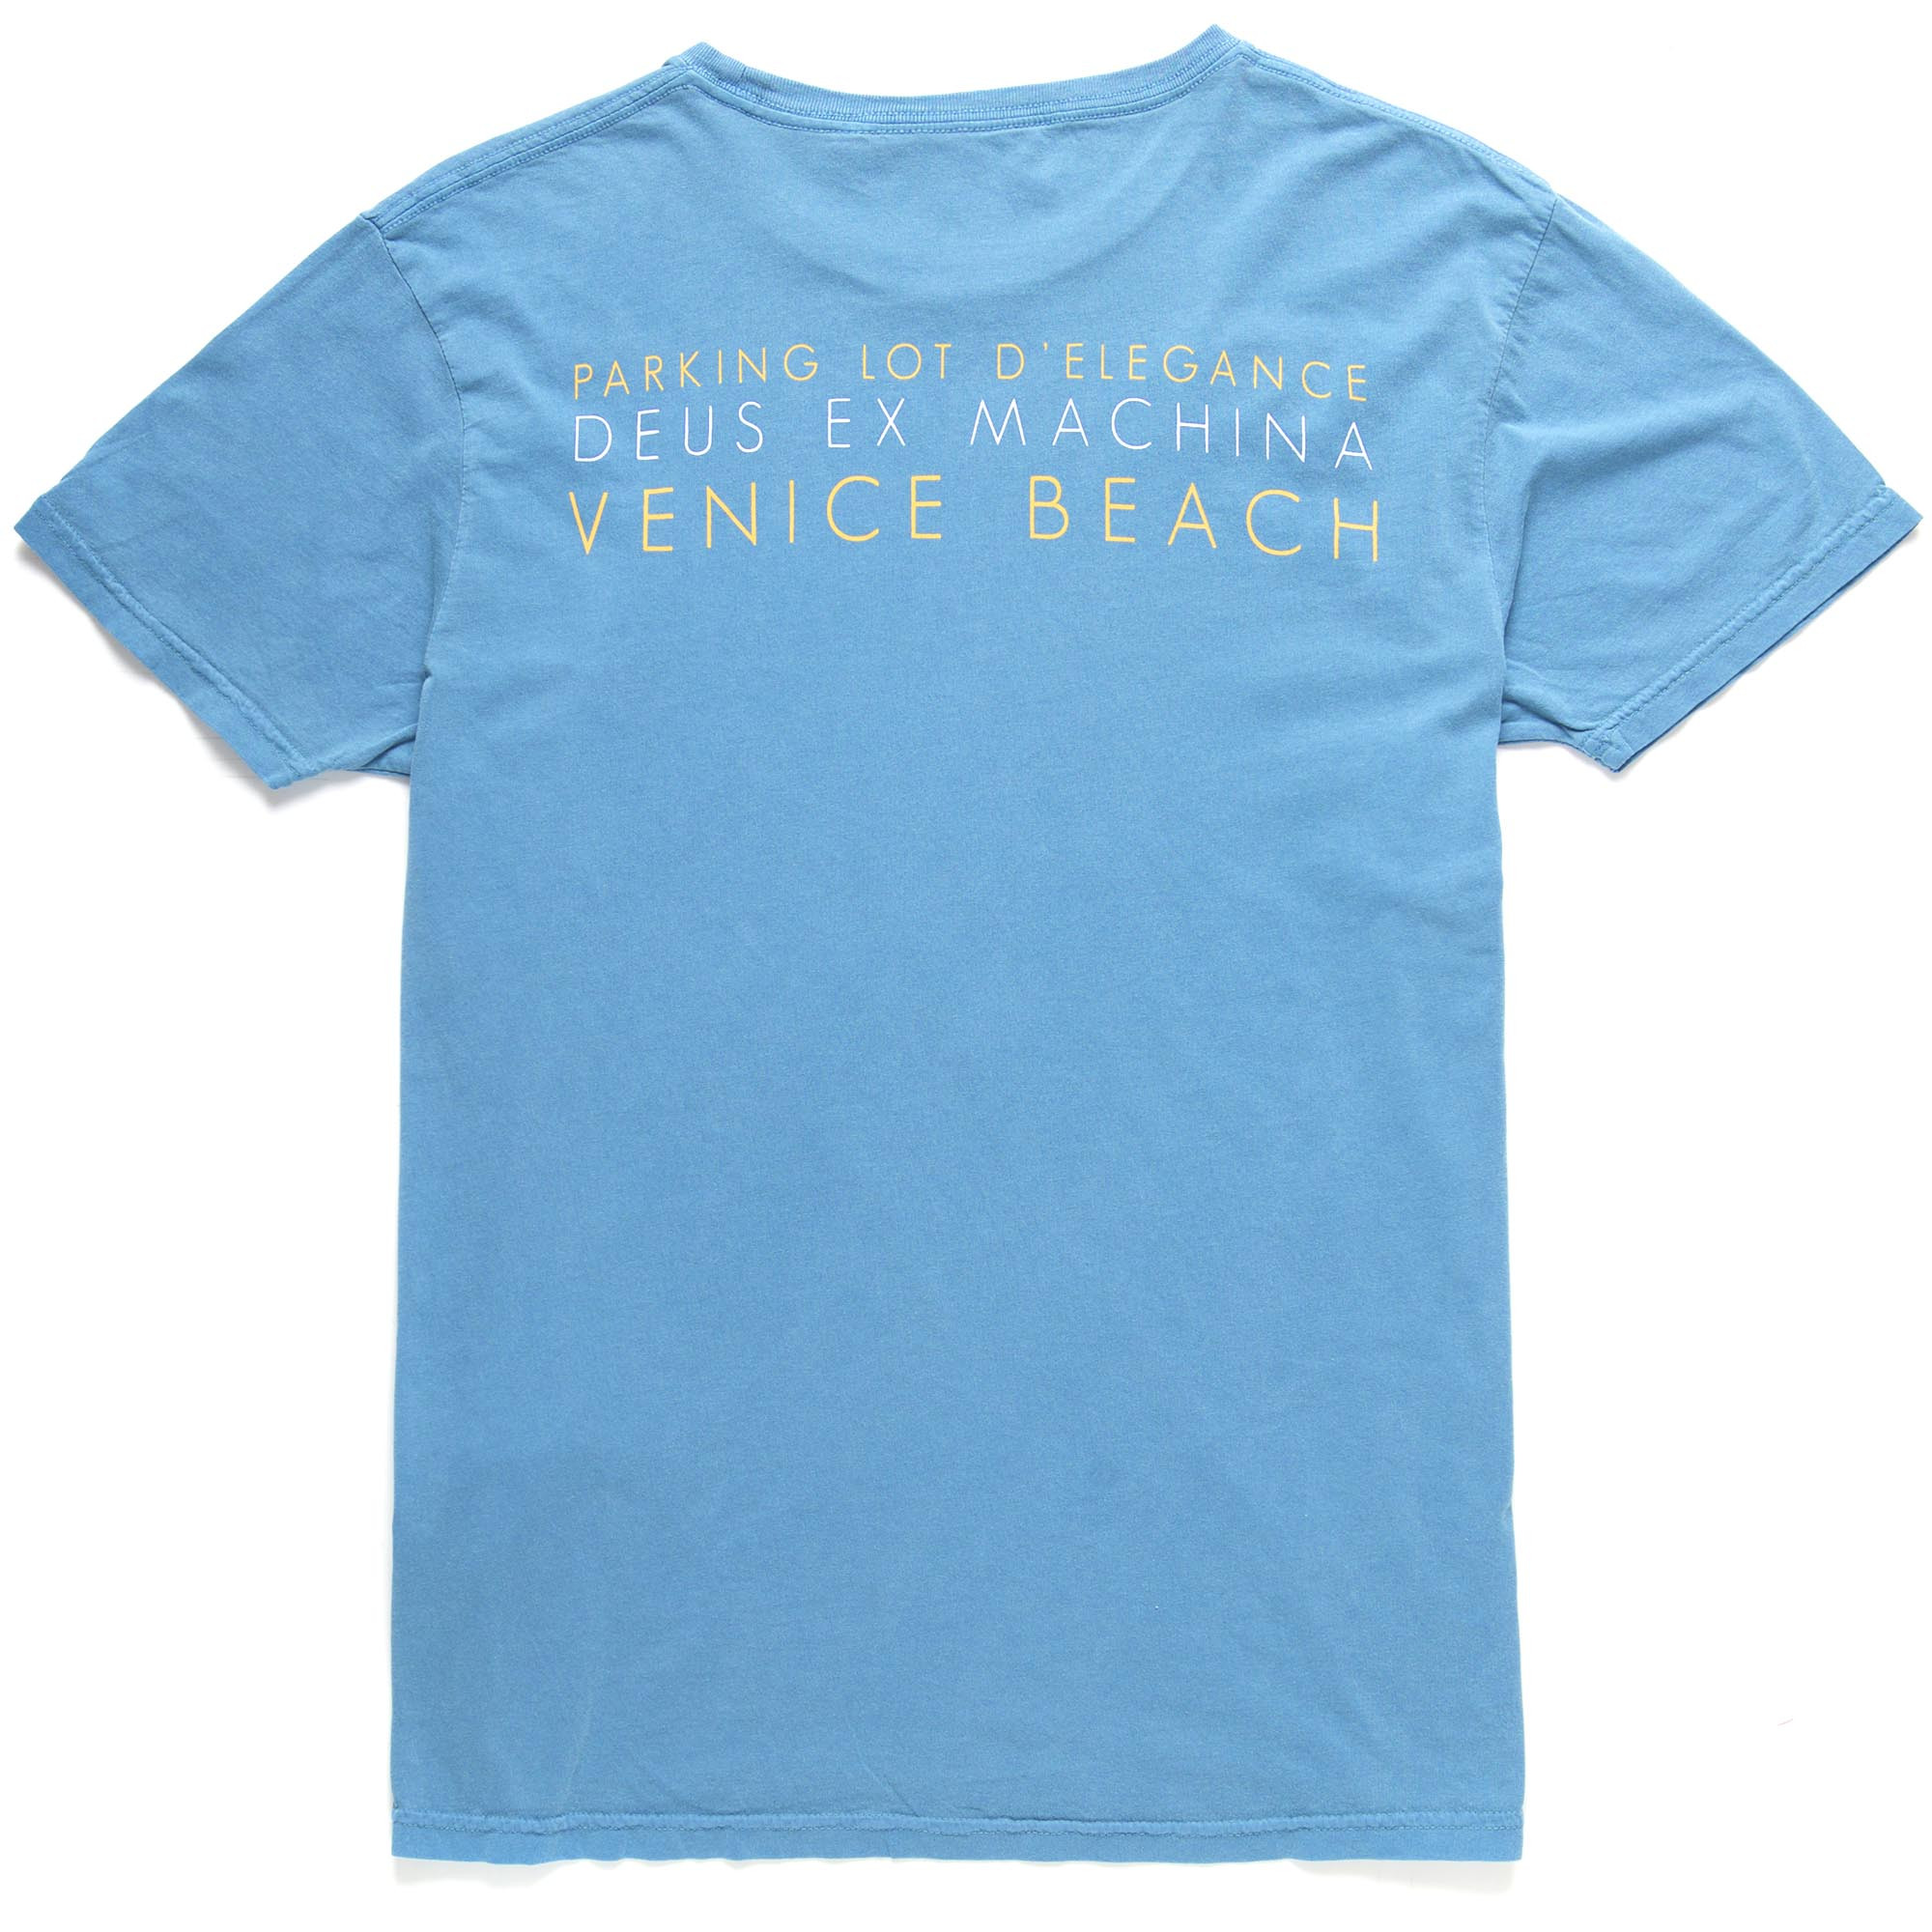 Venice Car T-Shirt by Deus Ex Machina - Choice Gear